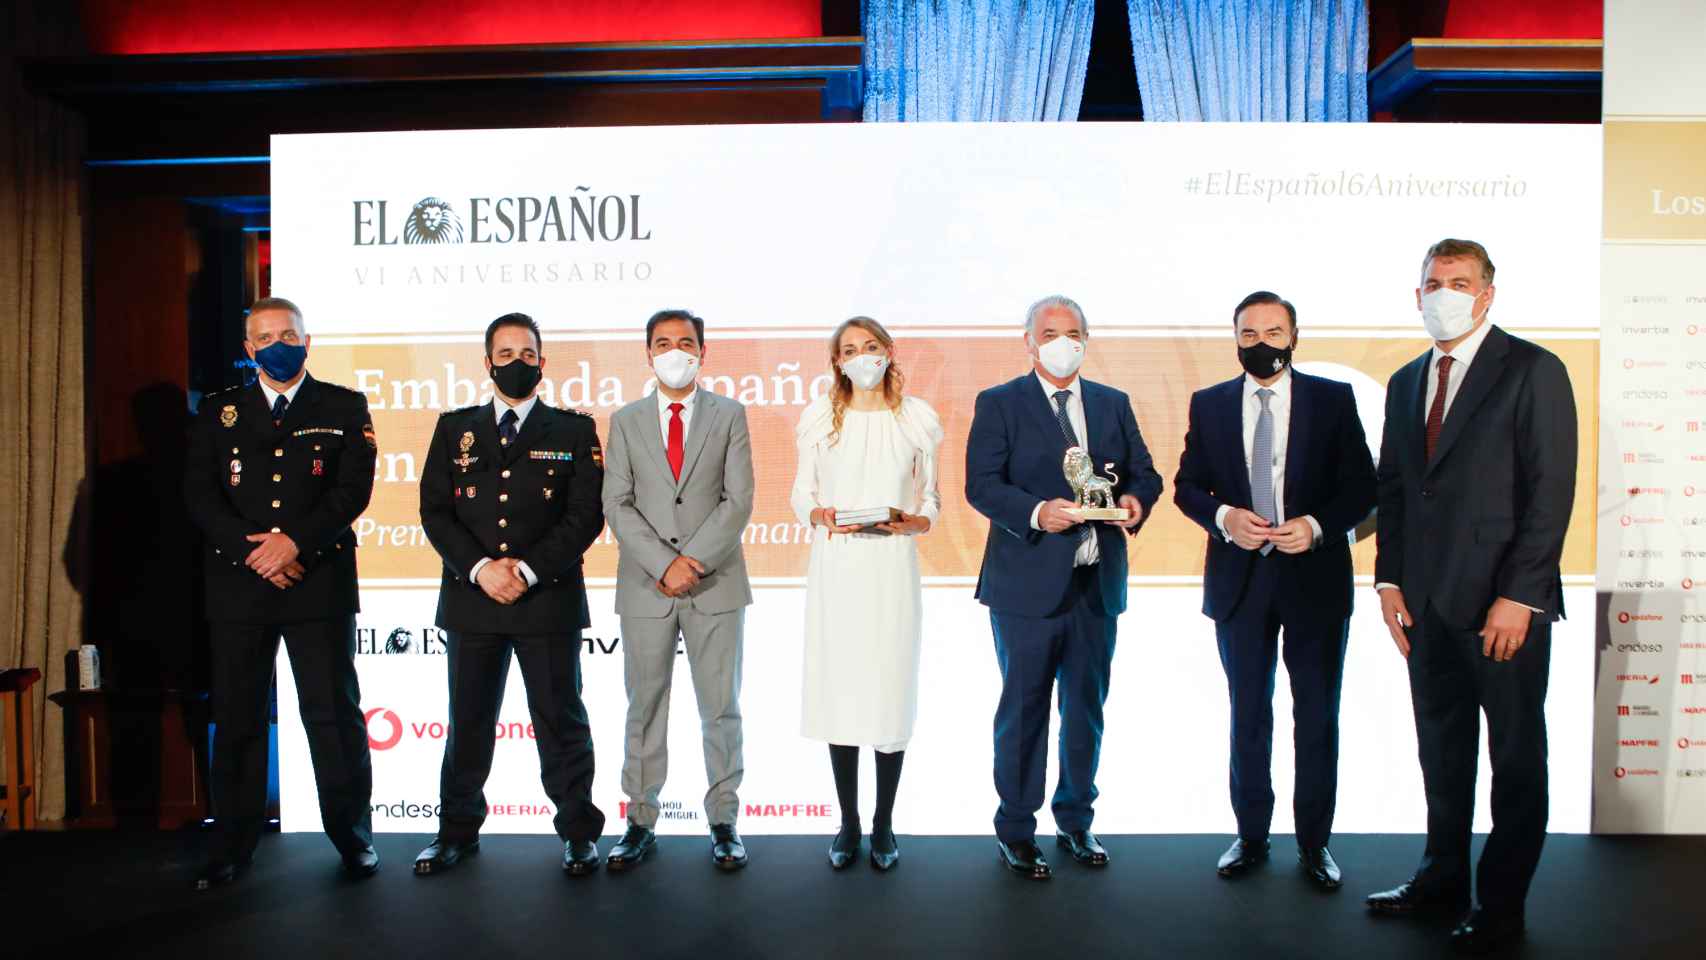 Los miembros de la Embajada de España en Kabul, con su galardón. A la derecha, Pedro J. Ramírez, y  Coman Deegan, CEO de Vodafone en España.